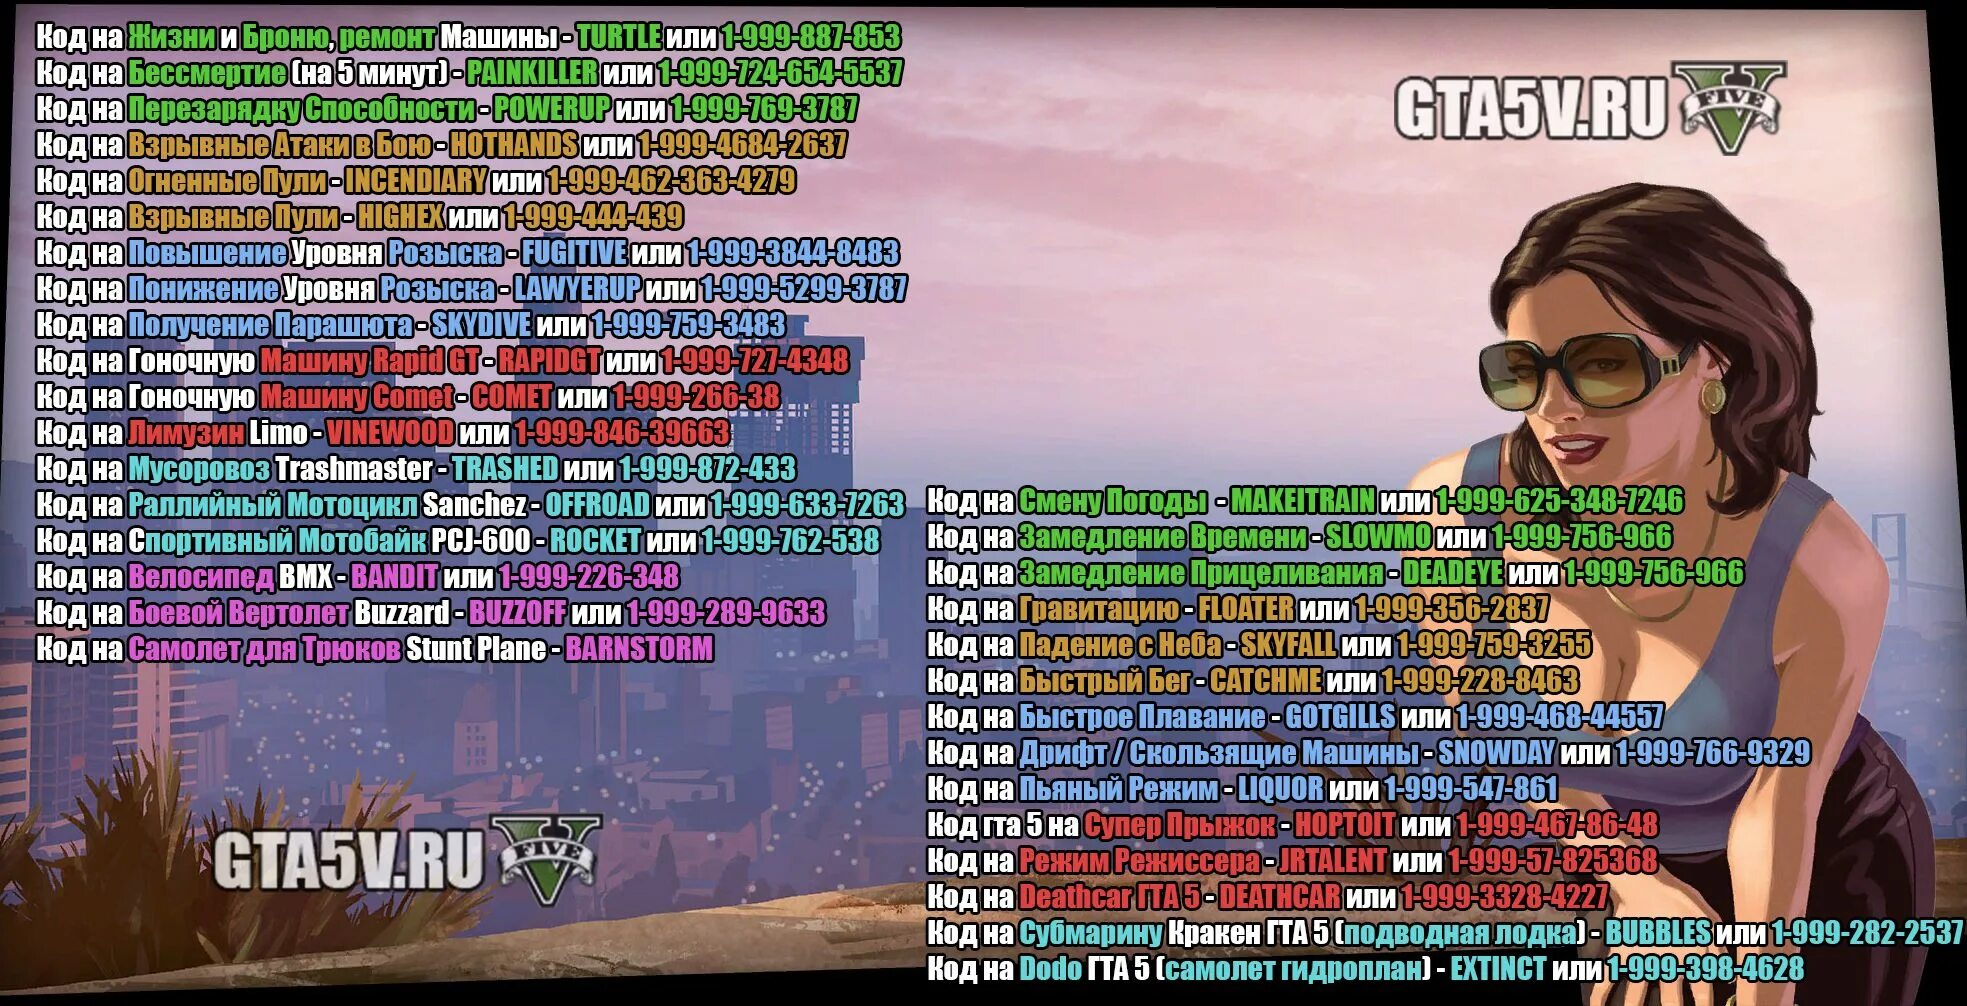 Чит на высадки. Читы на ГТА 5 чит коды на ГТА 5. GTA Grand Theft auto коды 5. Код GTA V код для GTA V. GTA 5 Чита.